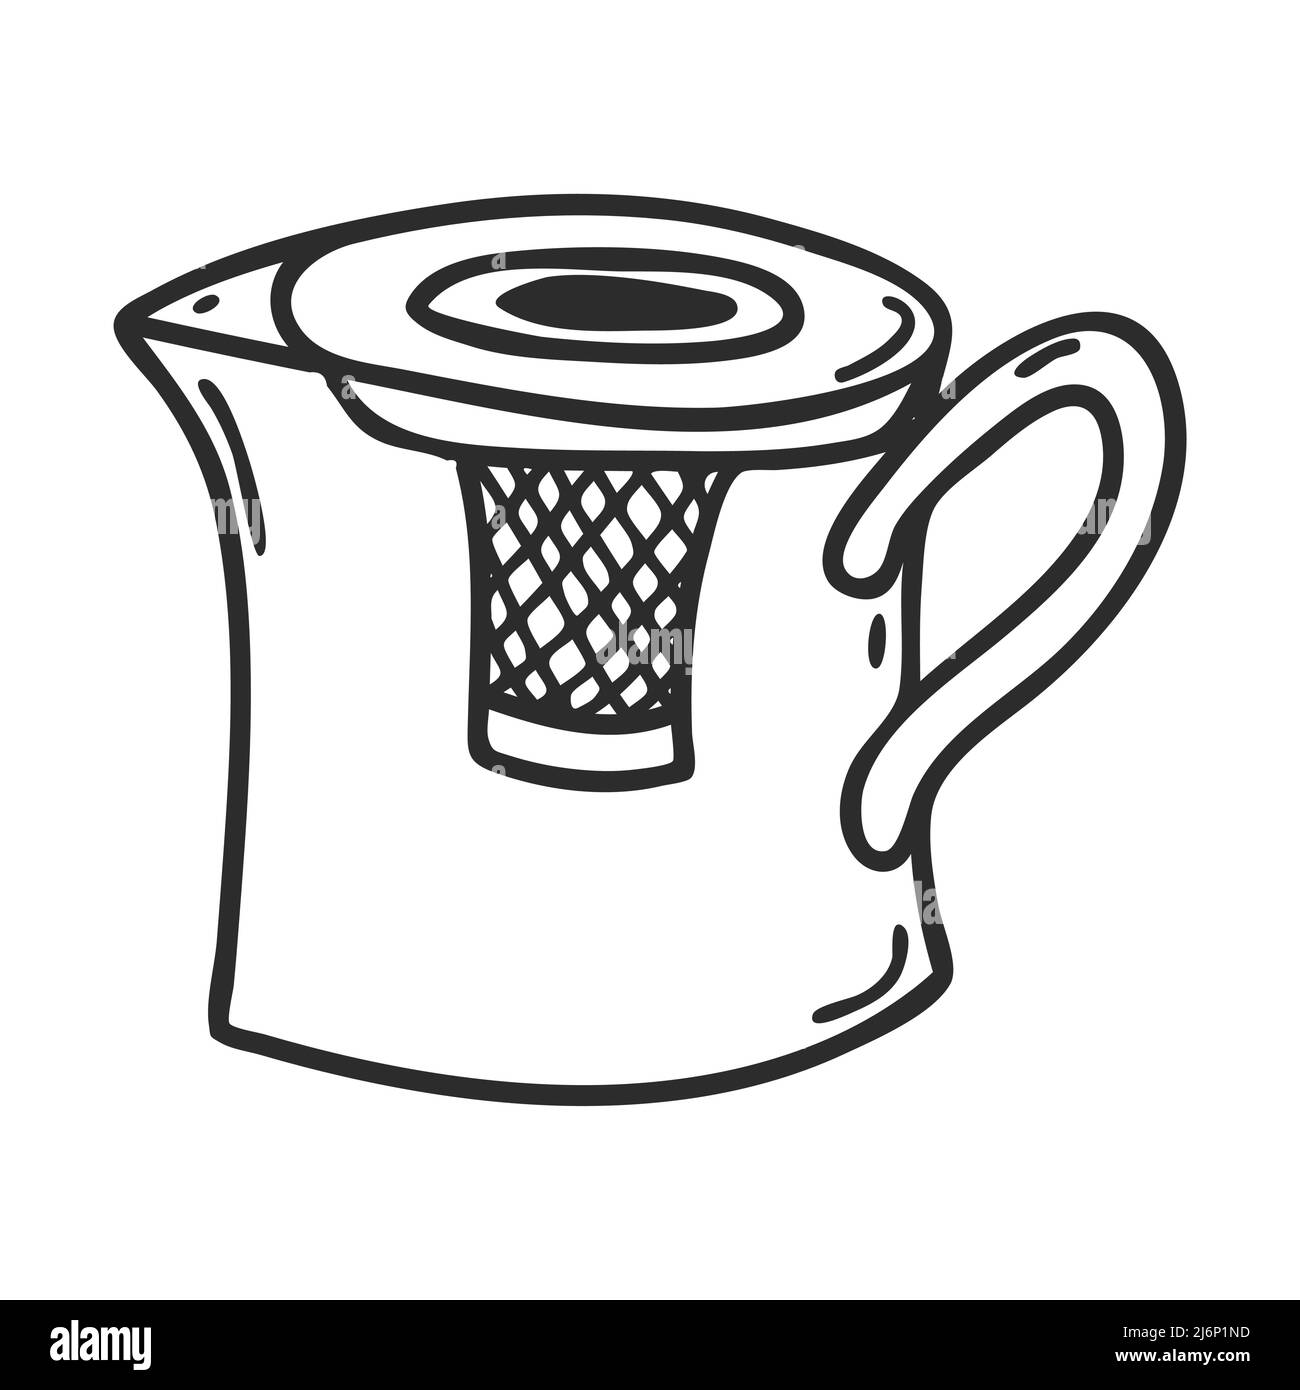 Wasserkocher für die Zubereitung von Tee im Doodle-Stil.Küchengerät für die Zubereitung von Tee.Dekoratives Element für Menügestaltung, Rezepte und Lebensmittelverpackungen. Von Hand gezeichnete und Stock Vektor